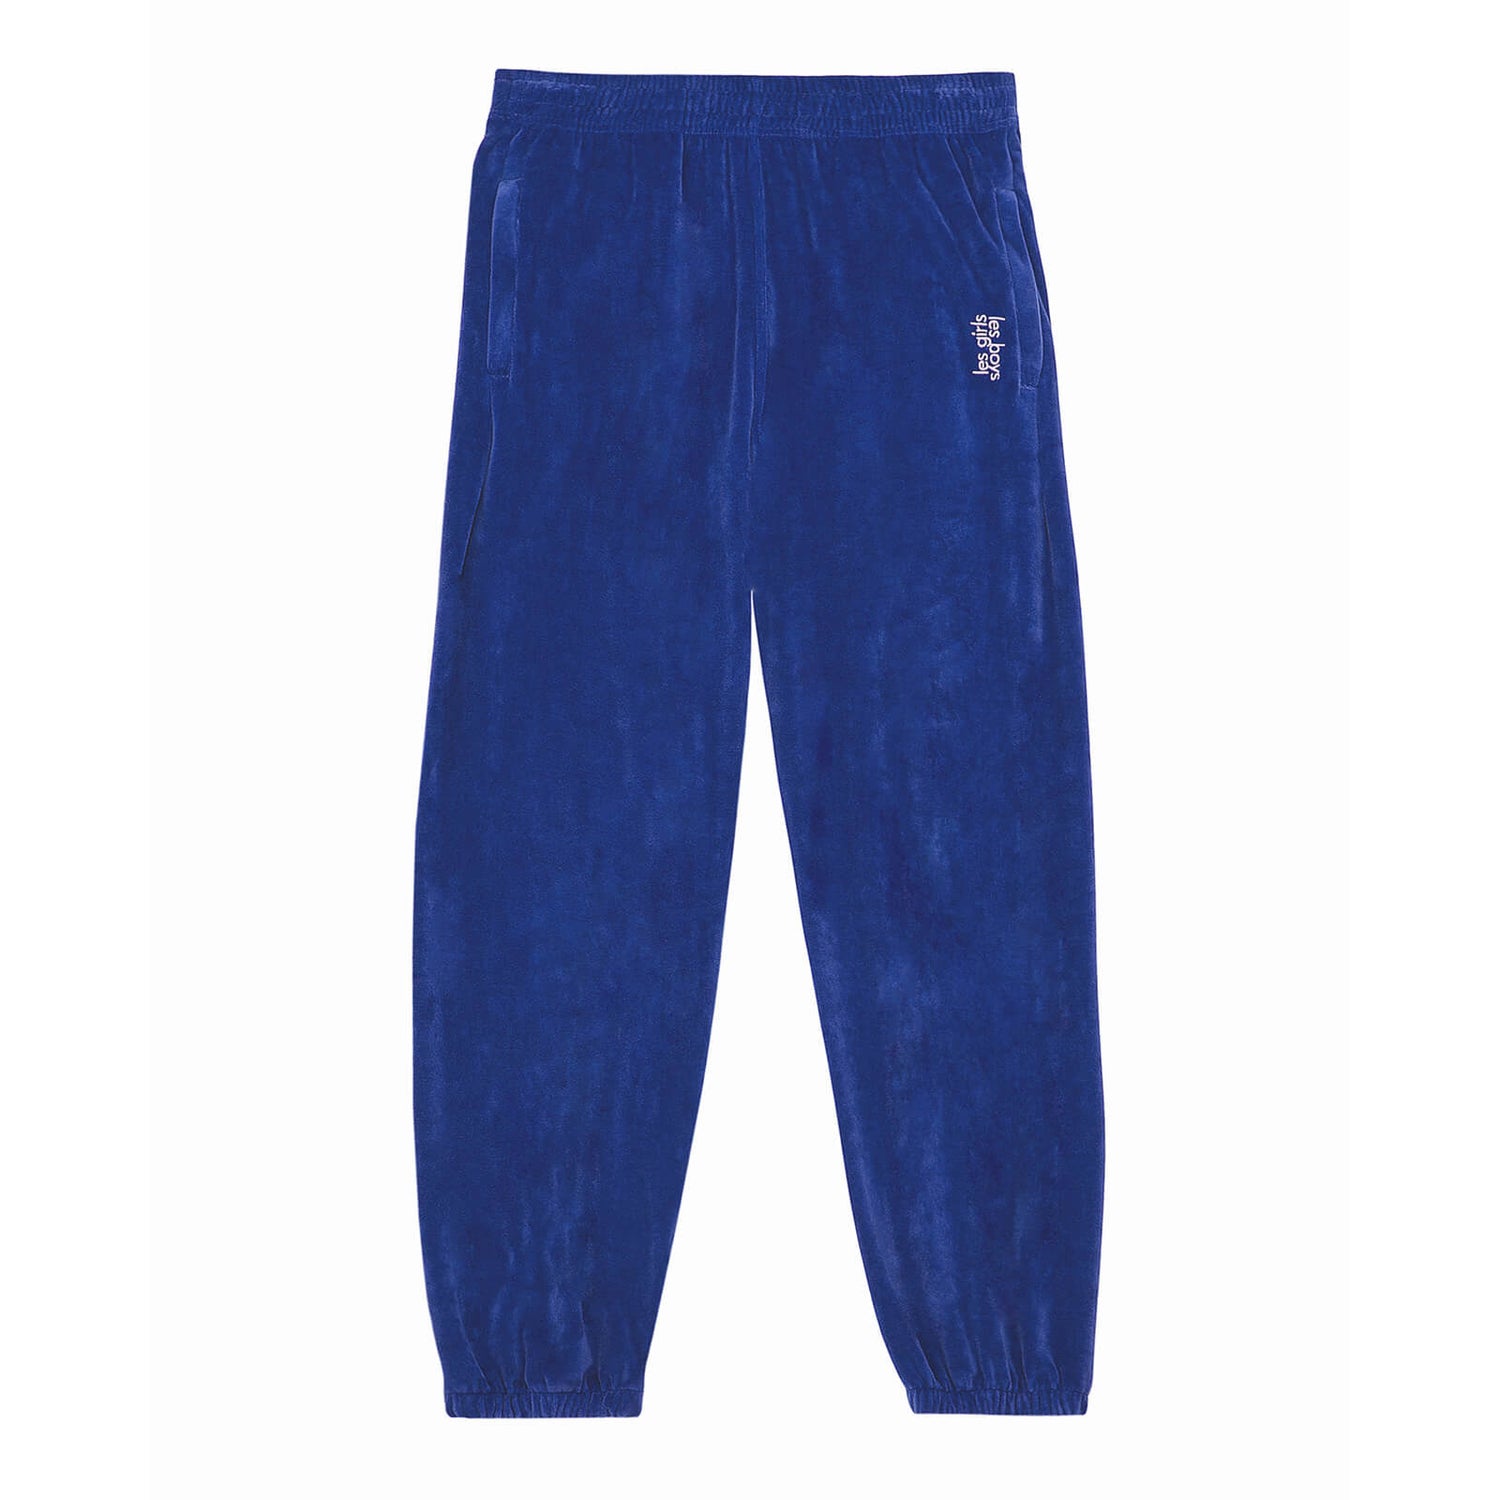 Les Girls Les Boys Women's Velour Sweats Loose Fit Joggers - Blue